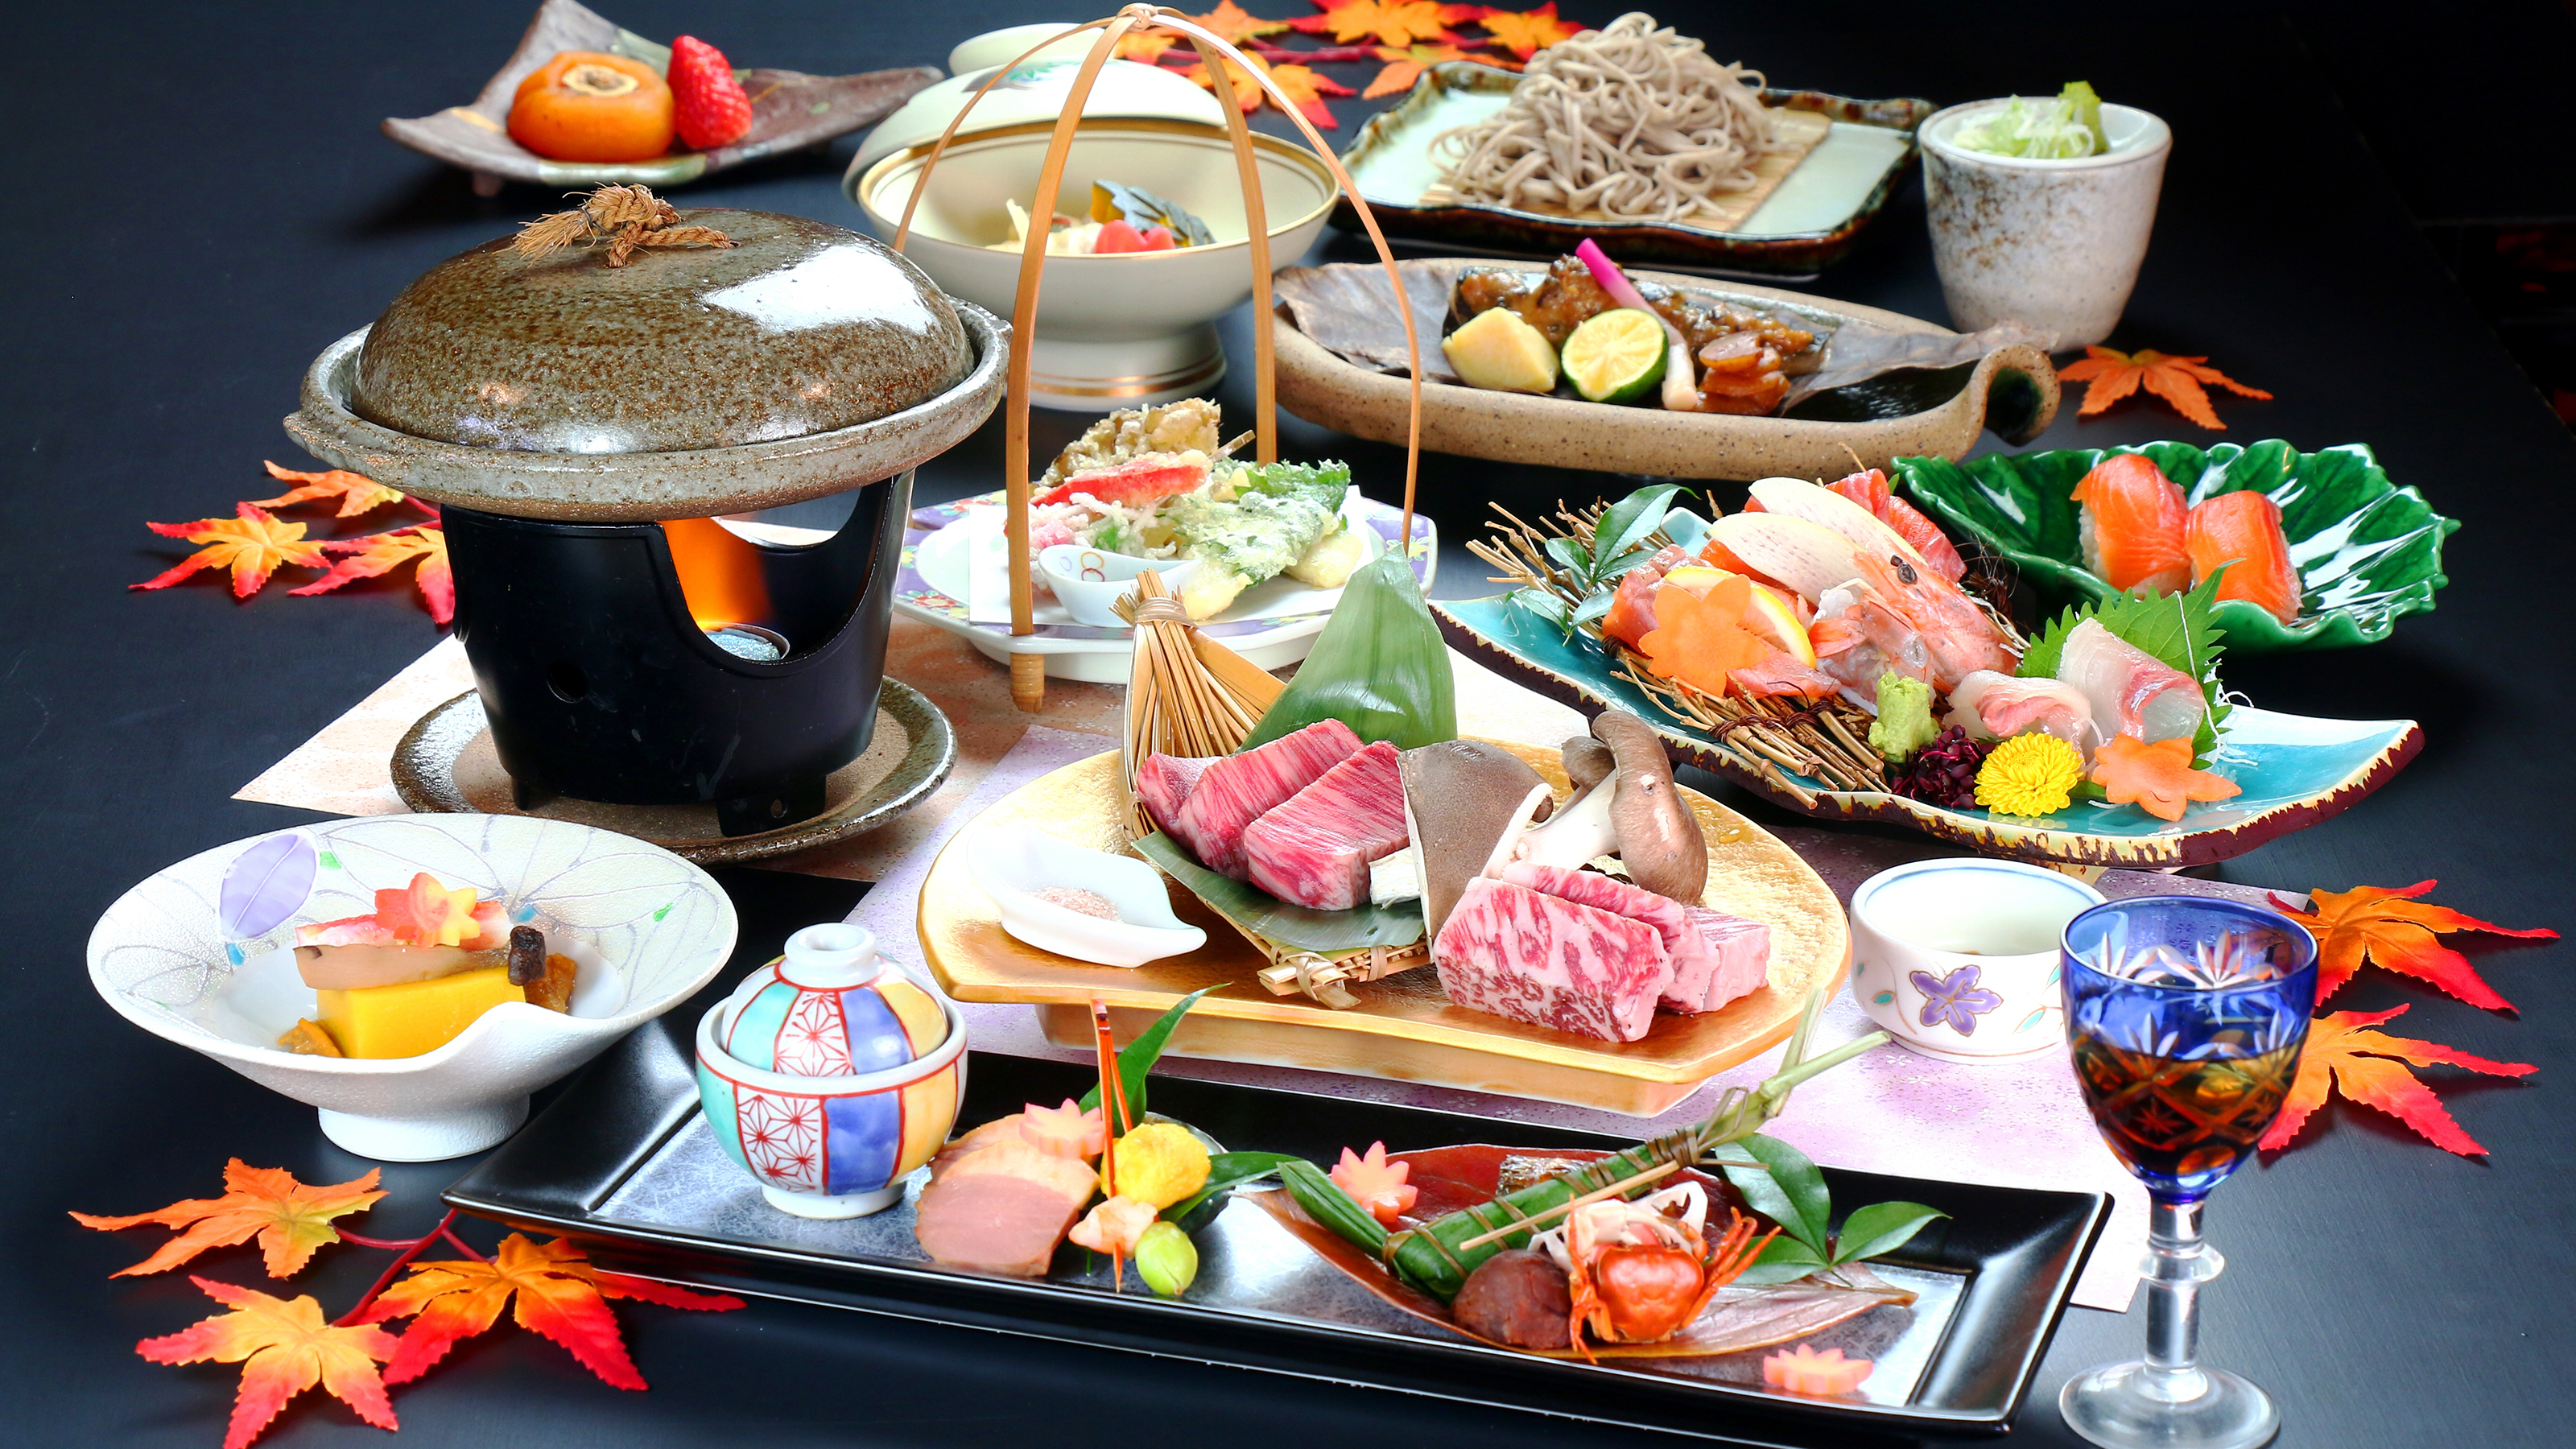 【食事】穂高城のグレードアップ会席コース。通常よりも高級食材を多く盛り込んだ贅沢な内容です。 